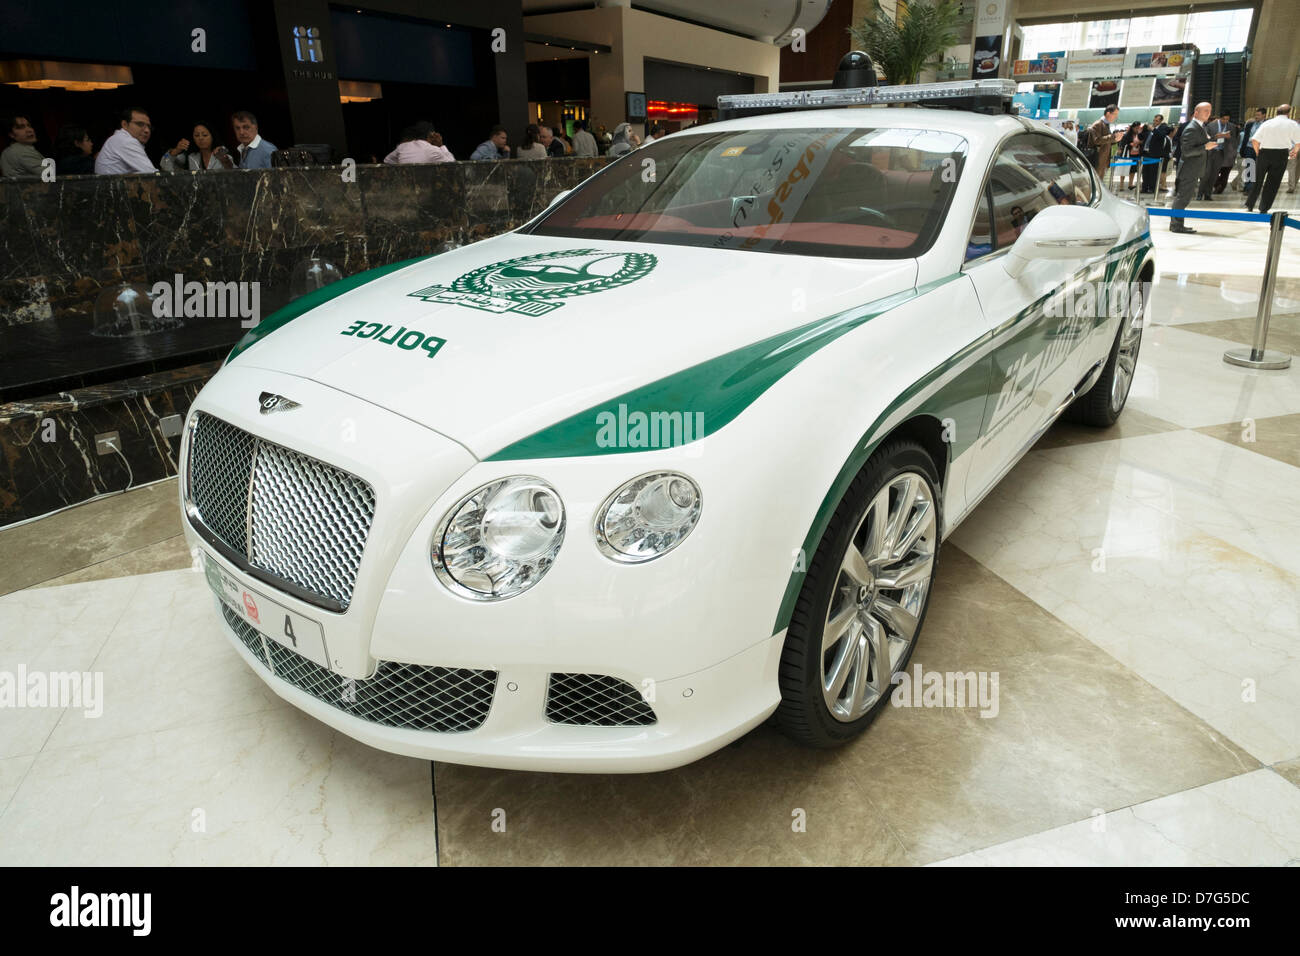 Dubai, Emiratos Árabes Unidos. El 7 de mayo de 2013. Bentley Continental GT de alto rendimiento coche de policía de Dubai en exhibición en el World Trade Center de Dubai, Emiratos Árabes Unidos. Crédito: Iain Masterton / Alamy Live News Foto de stock